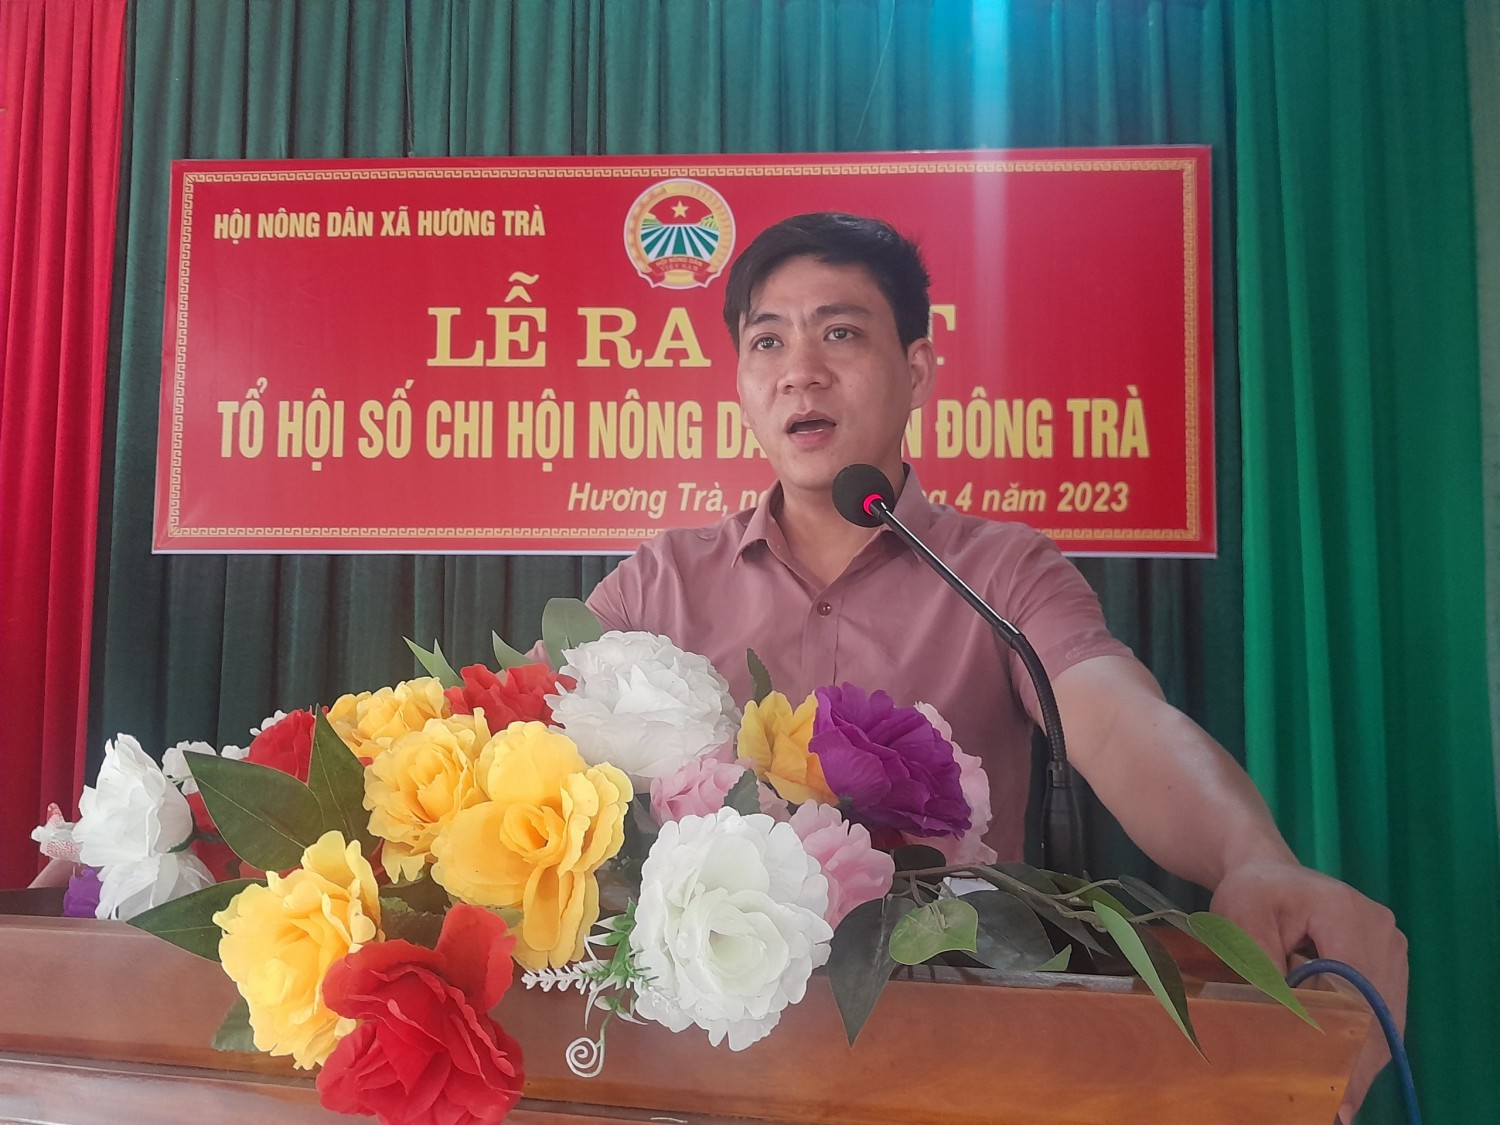 ĐC Lê Trọng Dũng HUV, Bí thư Đảng ủy phát biểu tại buổi lễ